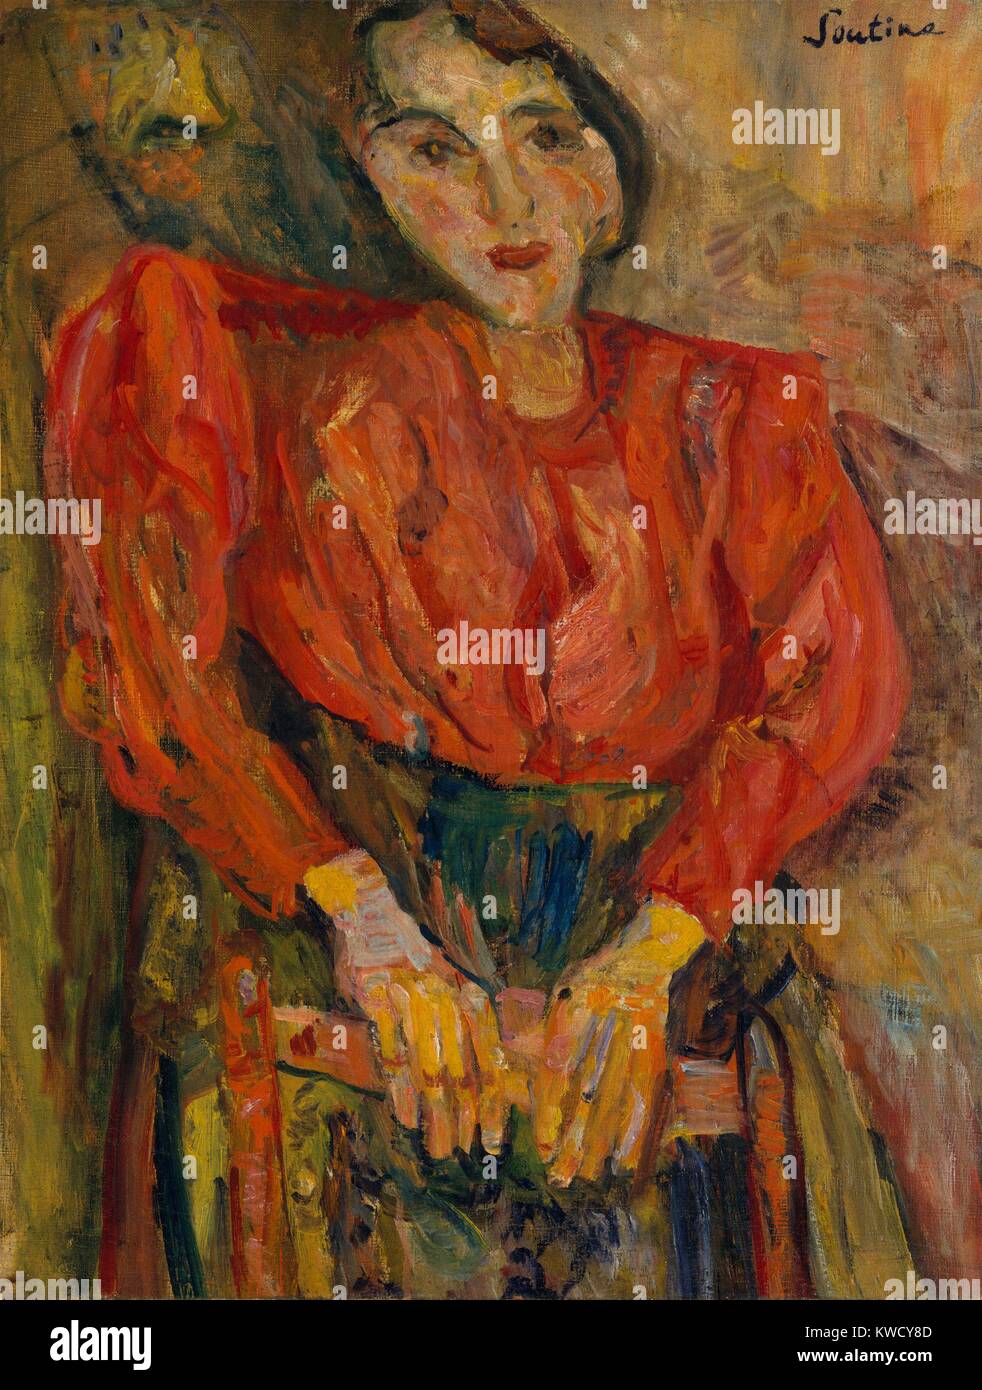 Woman in Red camicetta, da Chaim Soutine, 1919, la Federazione Francese di pittura espressionista, olio su tela. L'artista di vernice applicata in un impasto denso, coprendo la tela con energica pennellata, emotivamente e dissonante distorsione delle forme umane (BSLOC 2017 5 149) Foto Stock